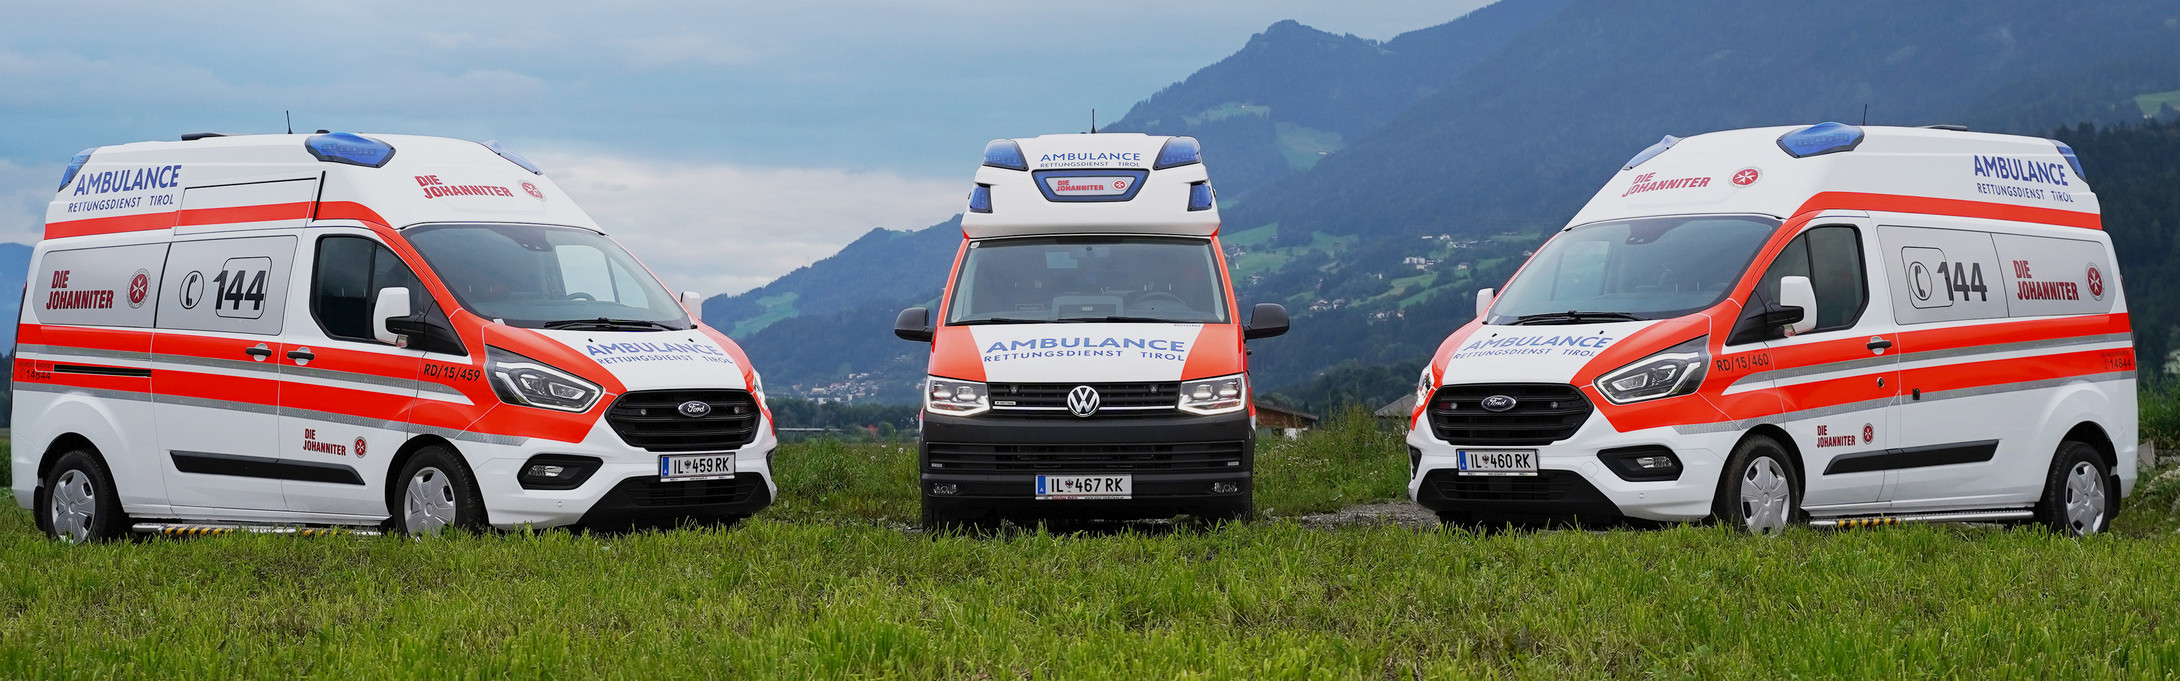 Drei Einsatzautos vom Rettungsdienst Tirol